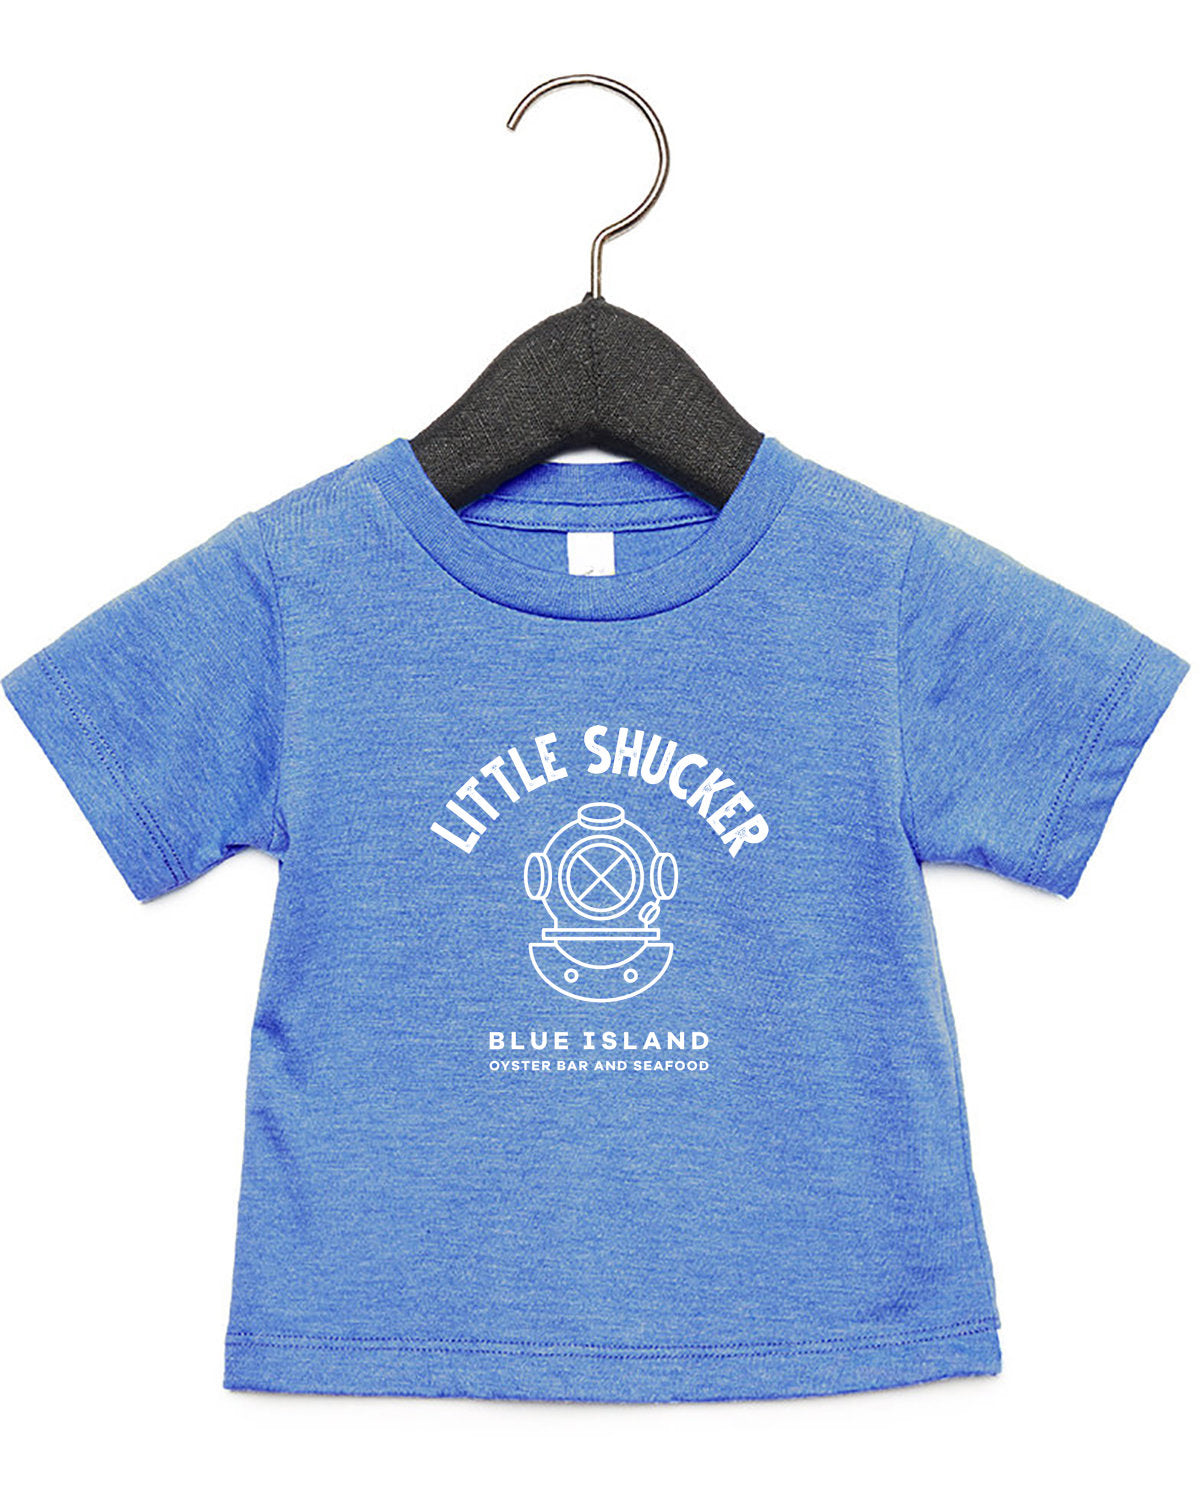 Blue Island Little Shucker Infant T-shirt